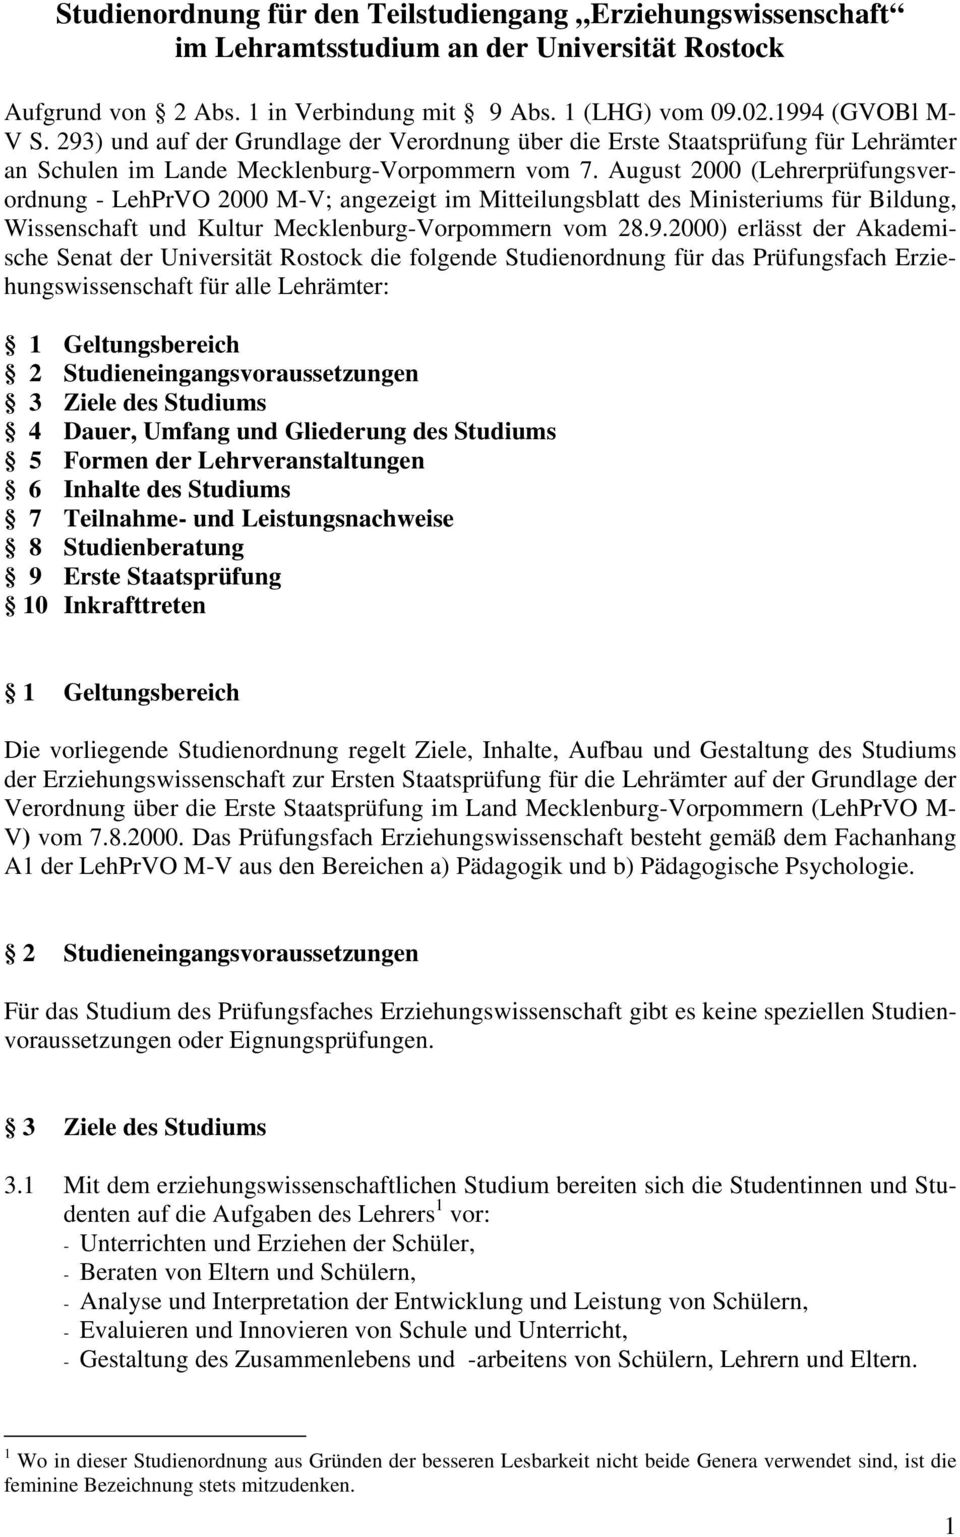 August 2000 (Lehrerprüfungsverordnung - LehPrVO 2000 M-V; angezeigt im Mitteilungsblatt des Ministeriums für Bildung, Wissenschaft und Kultur Mecklenburg-Vorpommern vom 28.9.